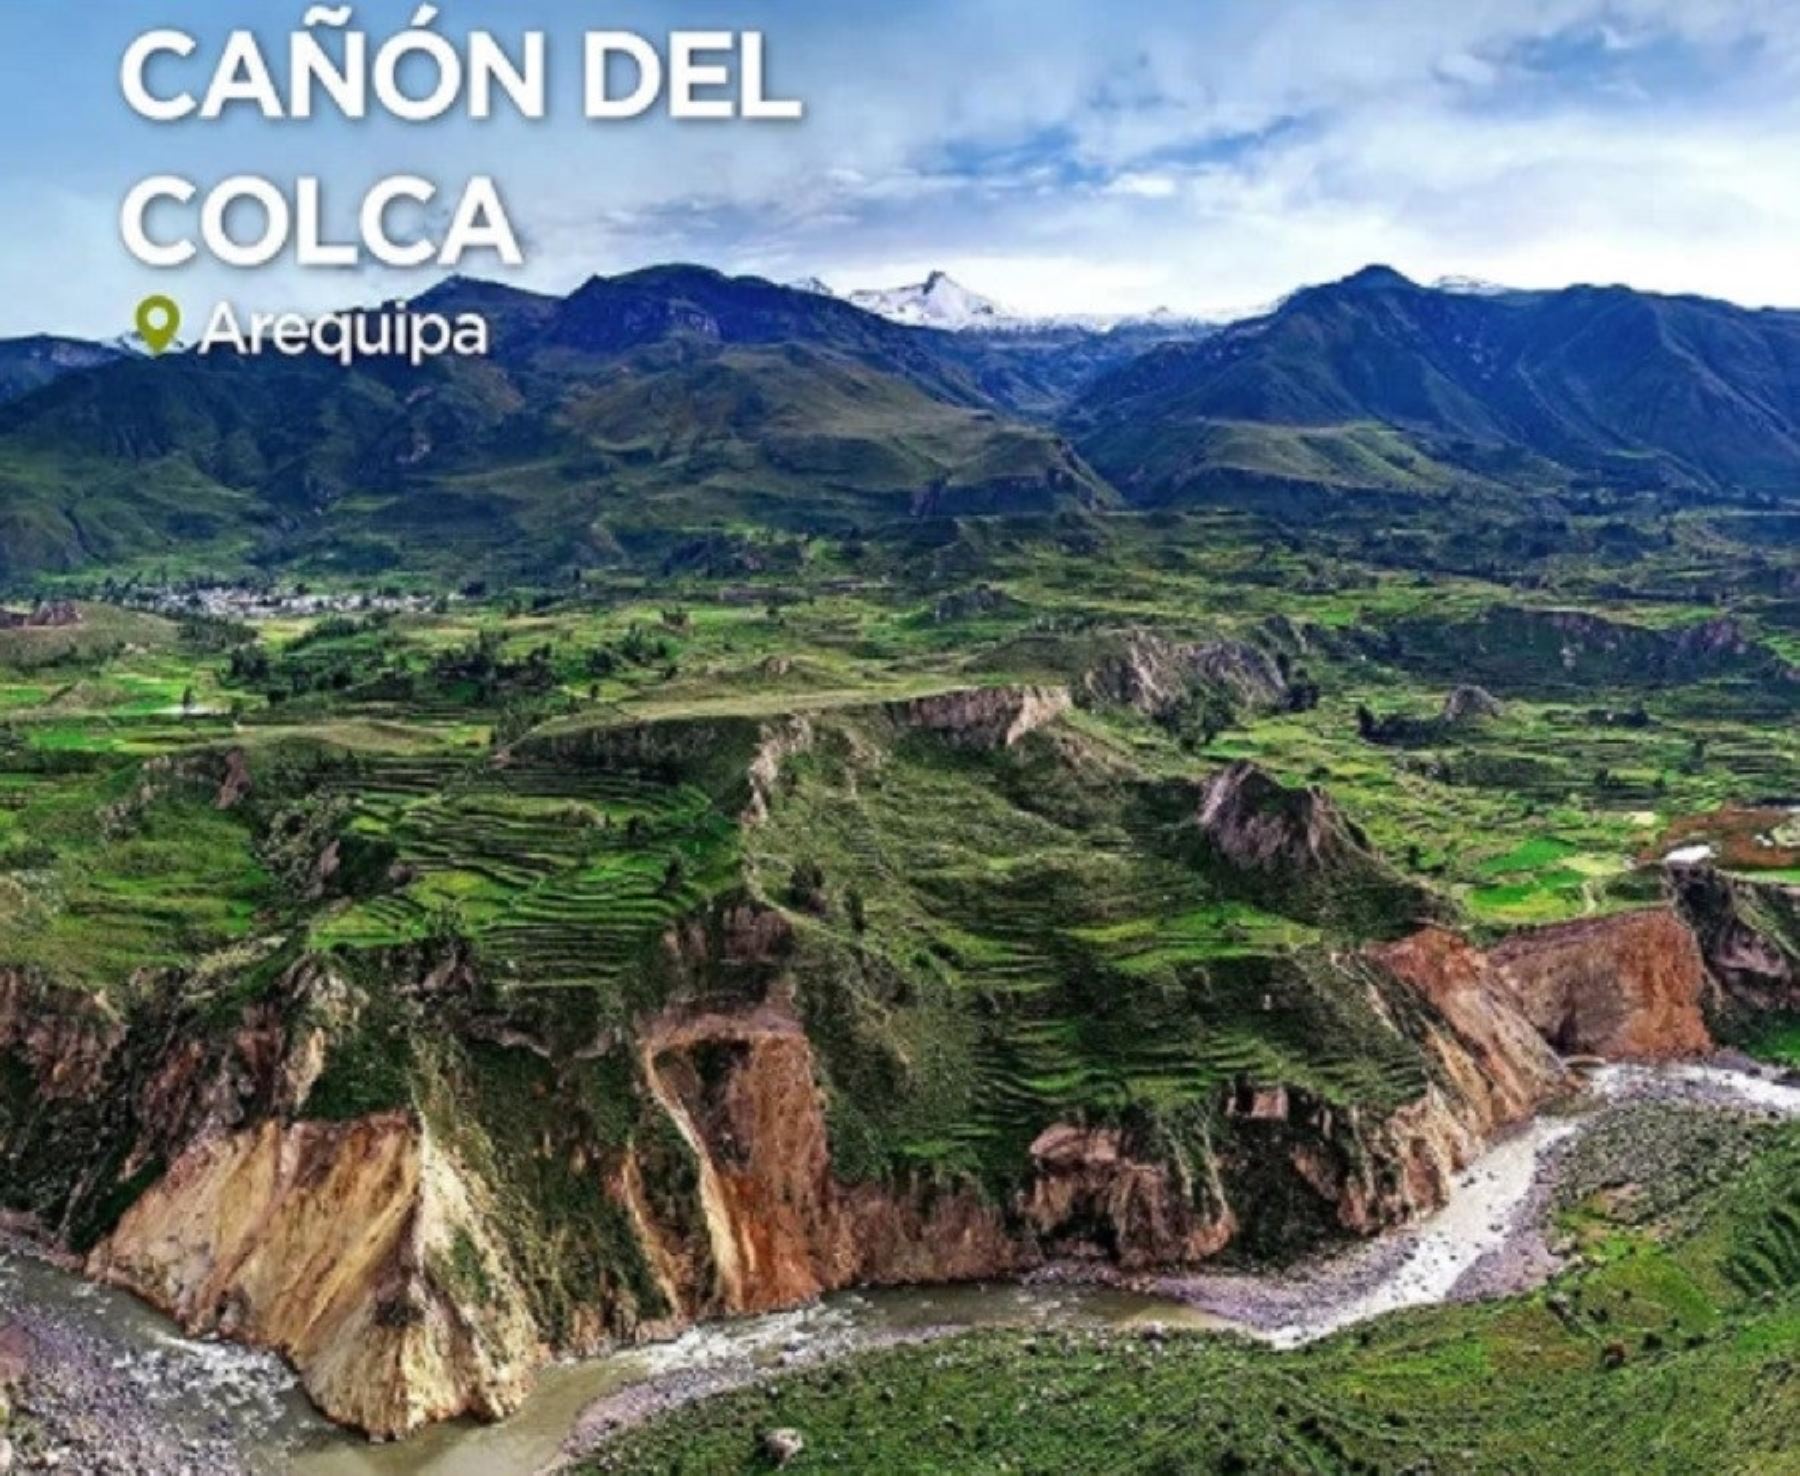 Prestigiosa revista National Geographic dedicó un amplió reportaje al Cañón del Colca y resaltó las bondades culturales y geográficas de este importante destino turístico de Arequipa.